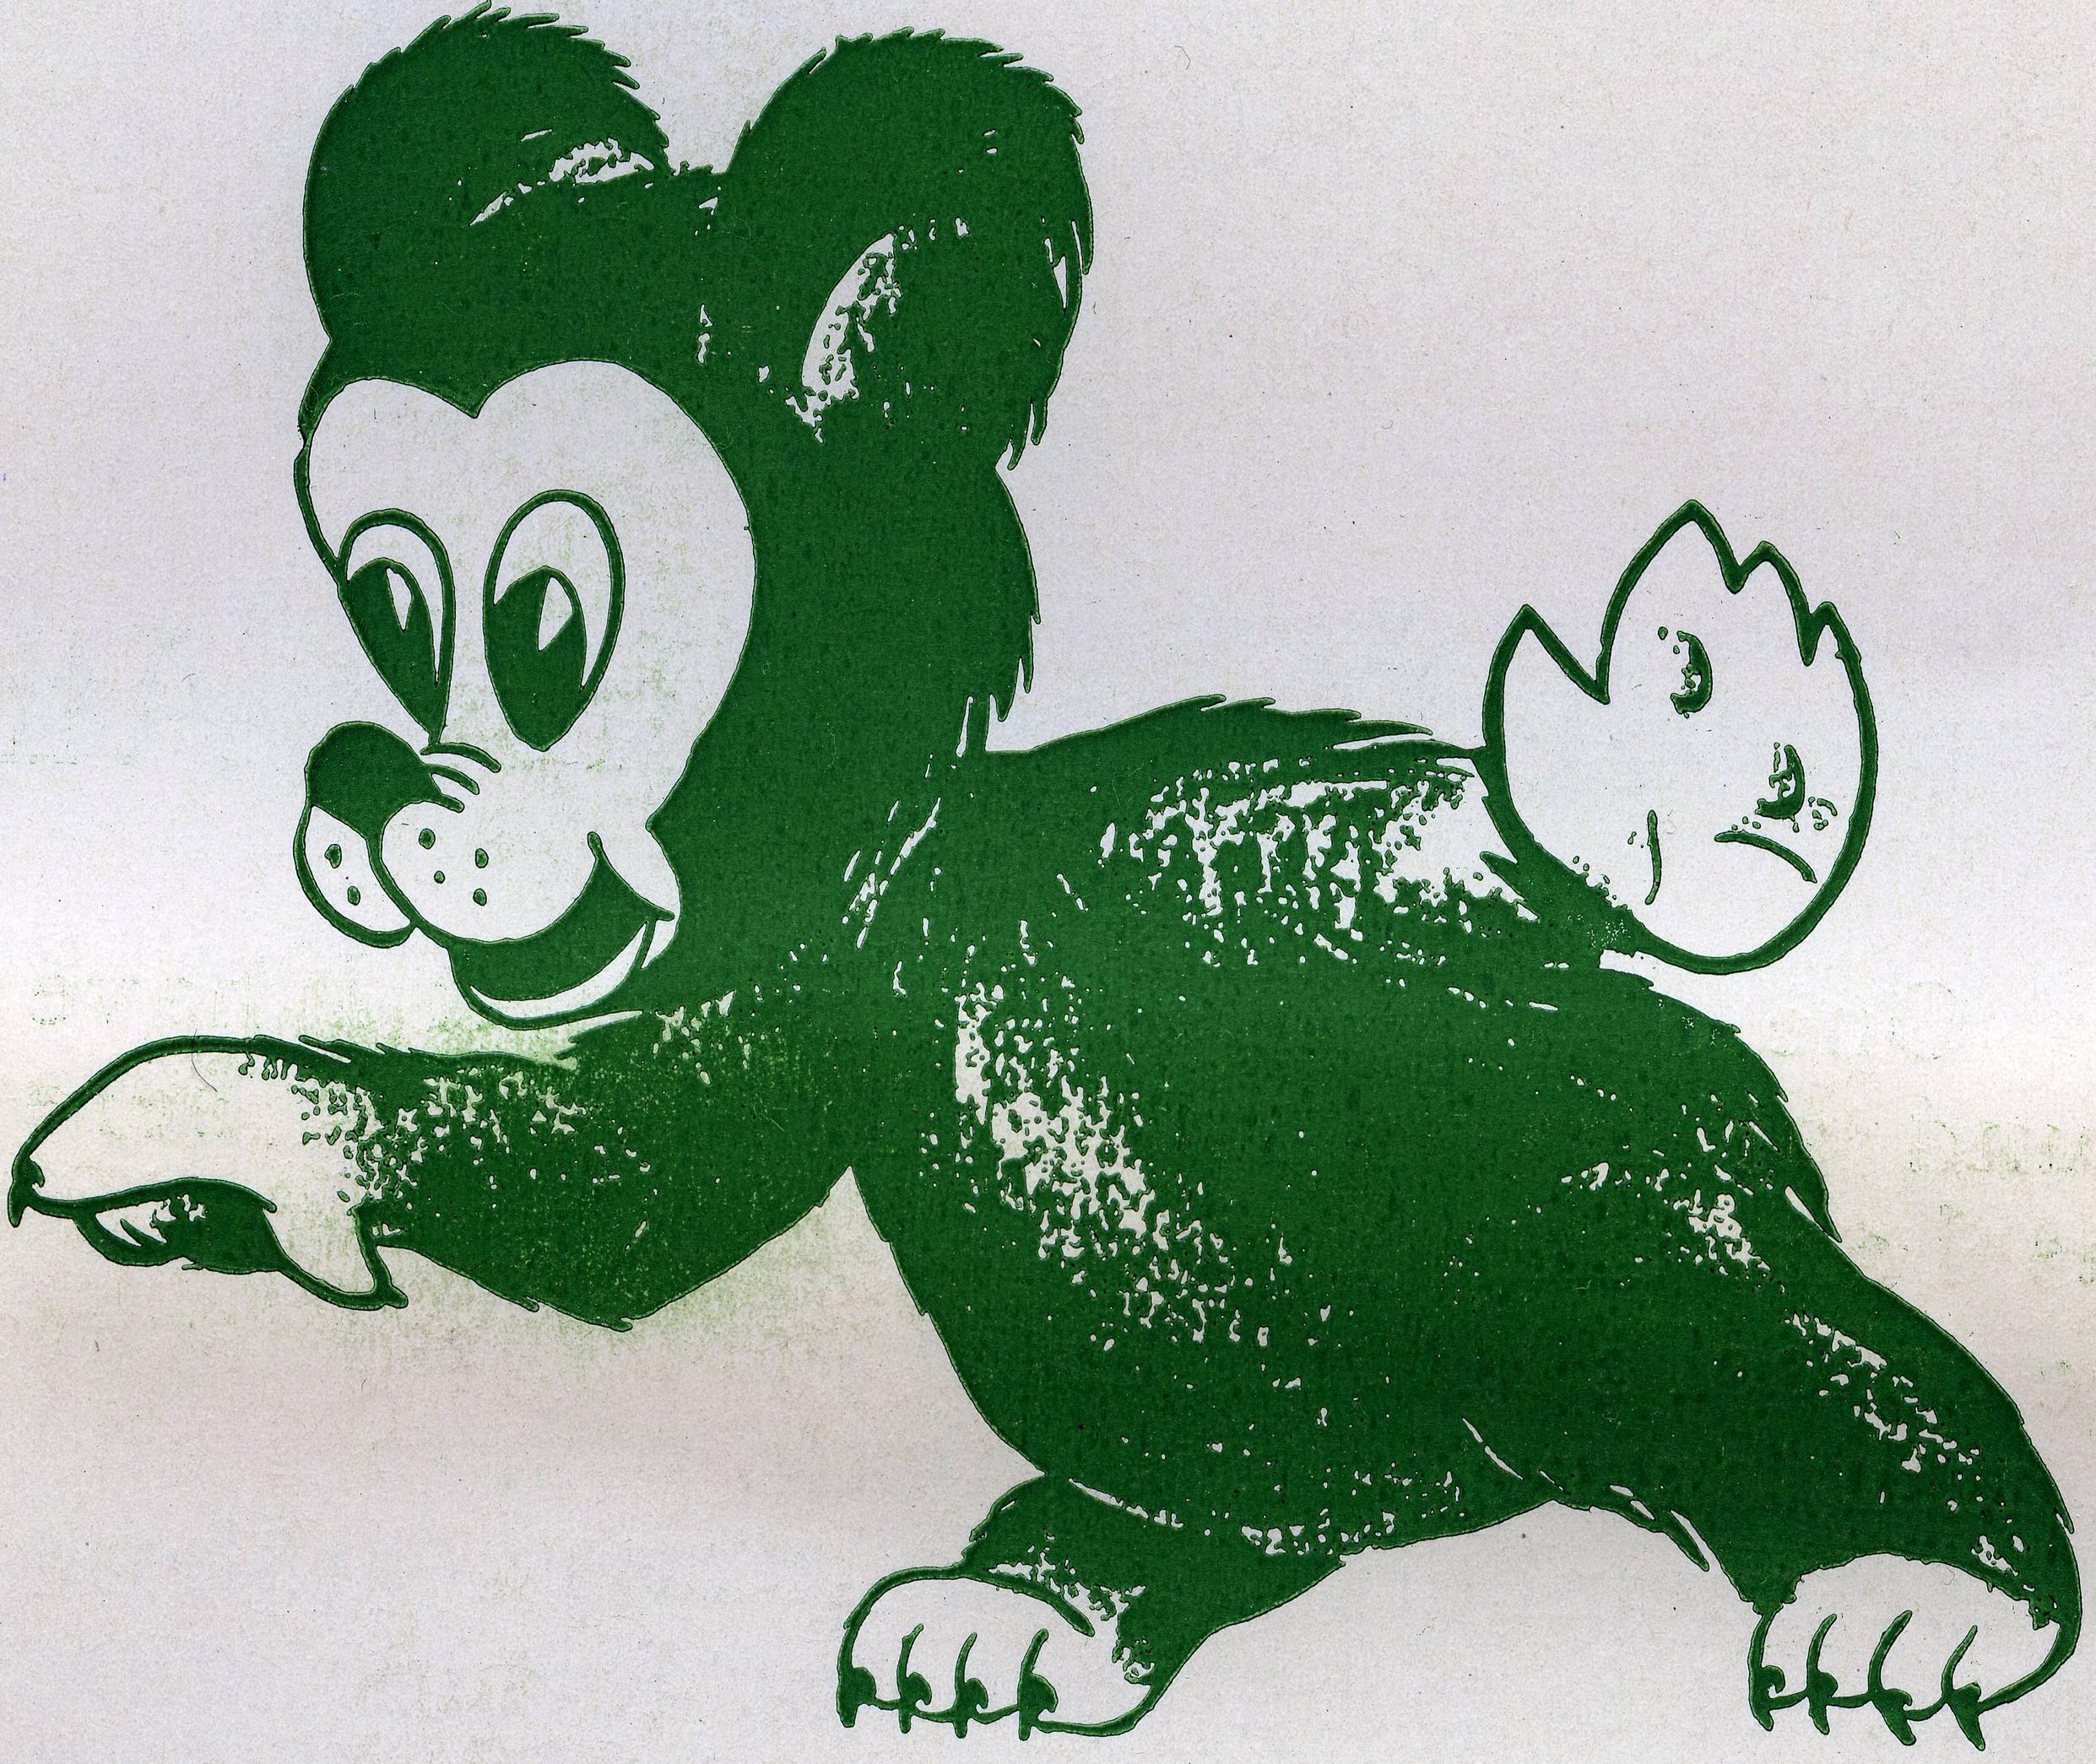 Baylor Logo - BaylorProud » A quick look at Baylor's bear logos through the years